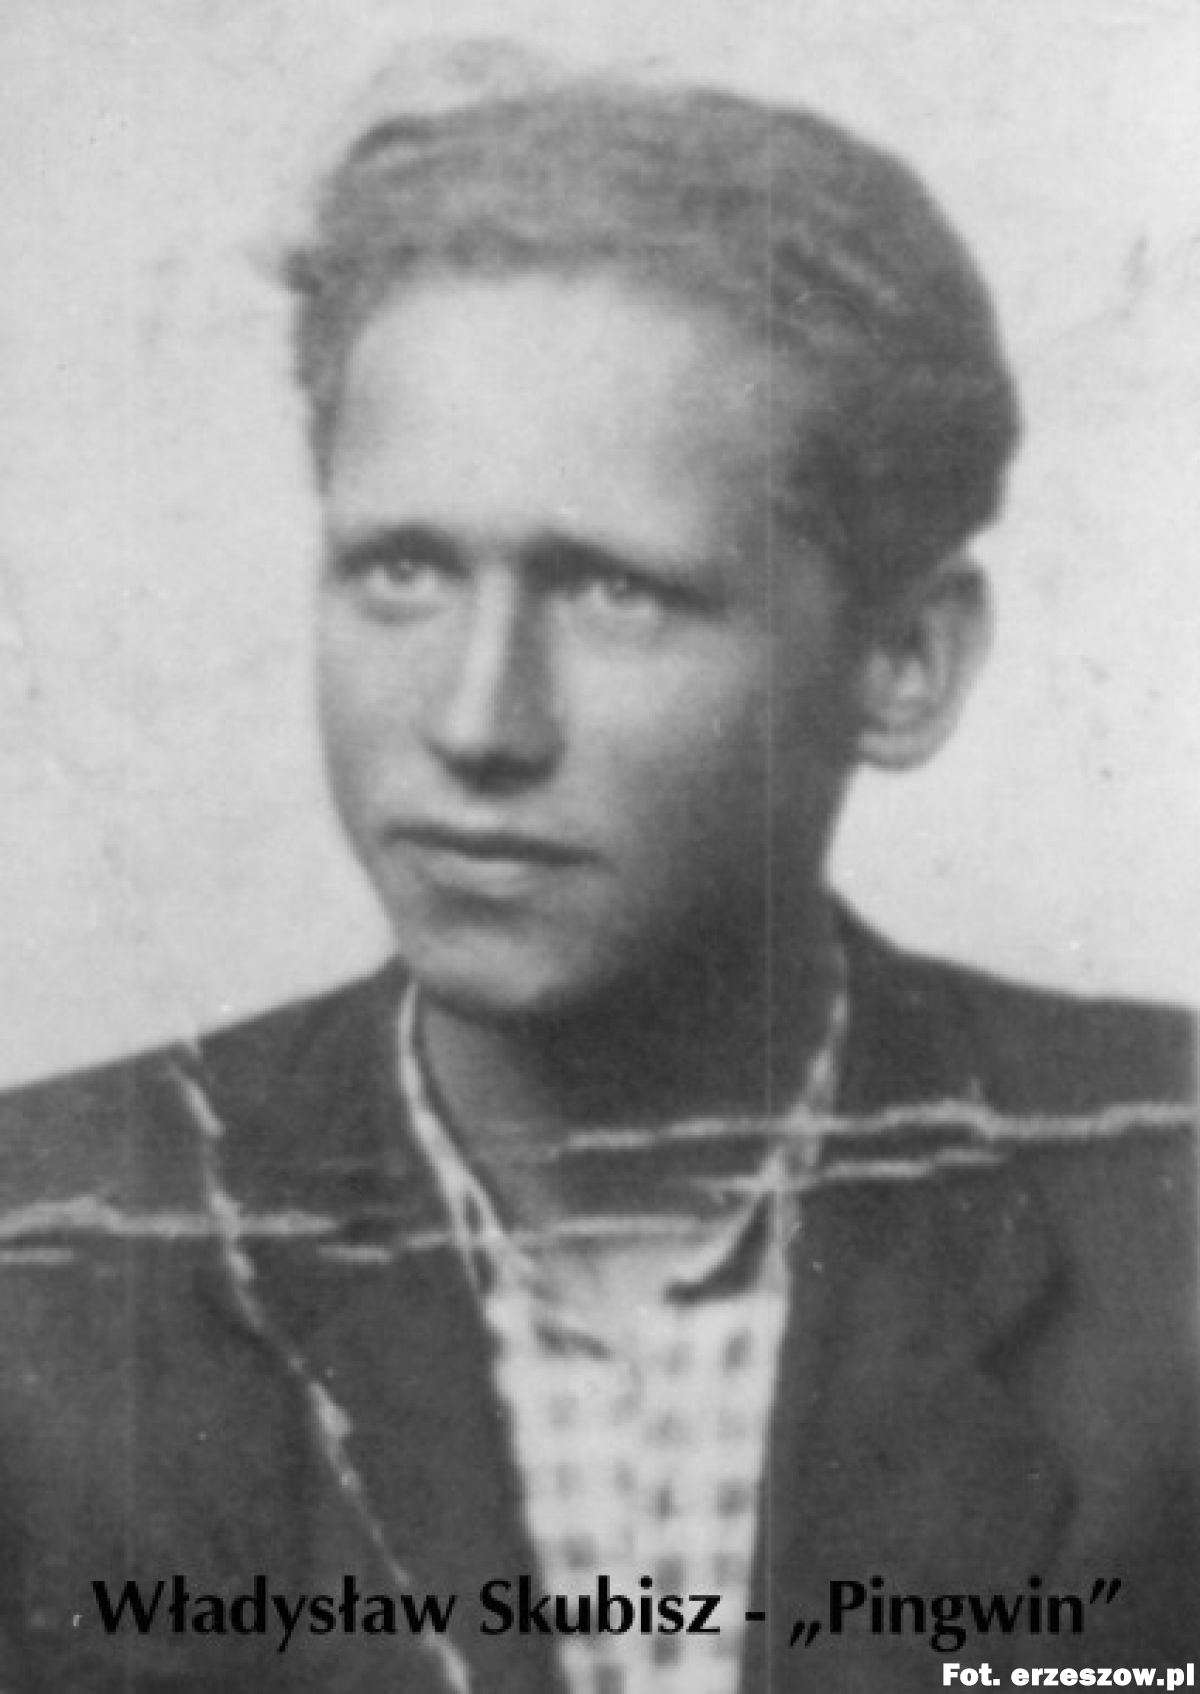 22.10.1944 - Prawdopodobnie w lasach głogowskich został rozstrzelany Władysław Skubisz ps. Pingwin. Pochodził z Krasnego, w czasie okupacji był żołnierzem dywersji AK, wykonawcą wyroku na gestapowców Pottebauma i Flaschkego, kawalerem orderu Virtuti Militari.